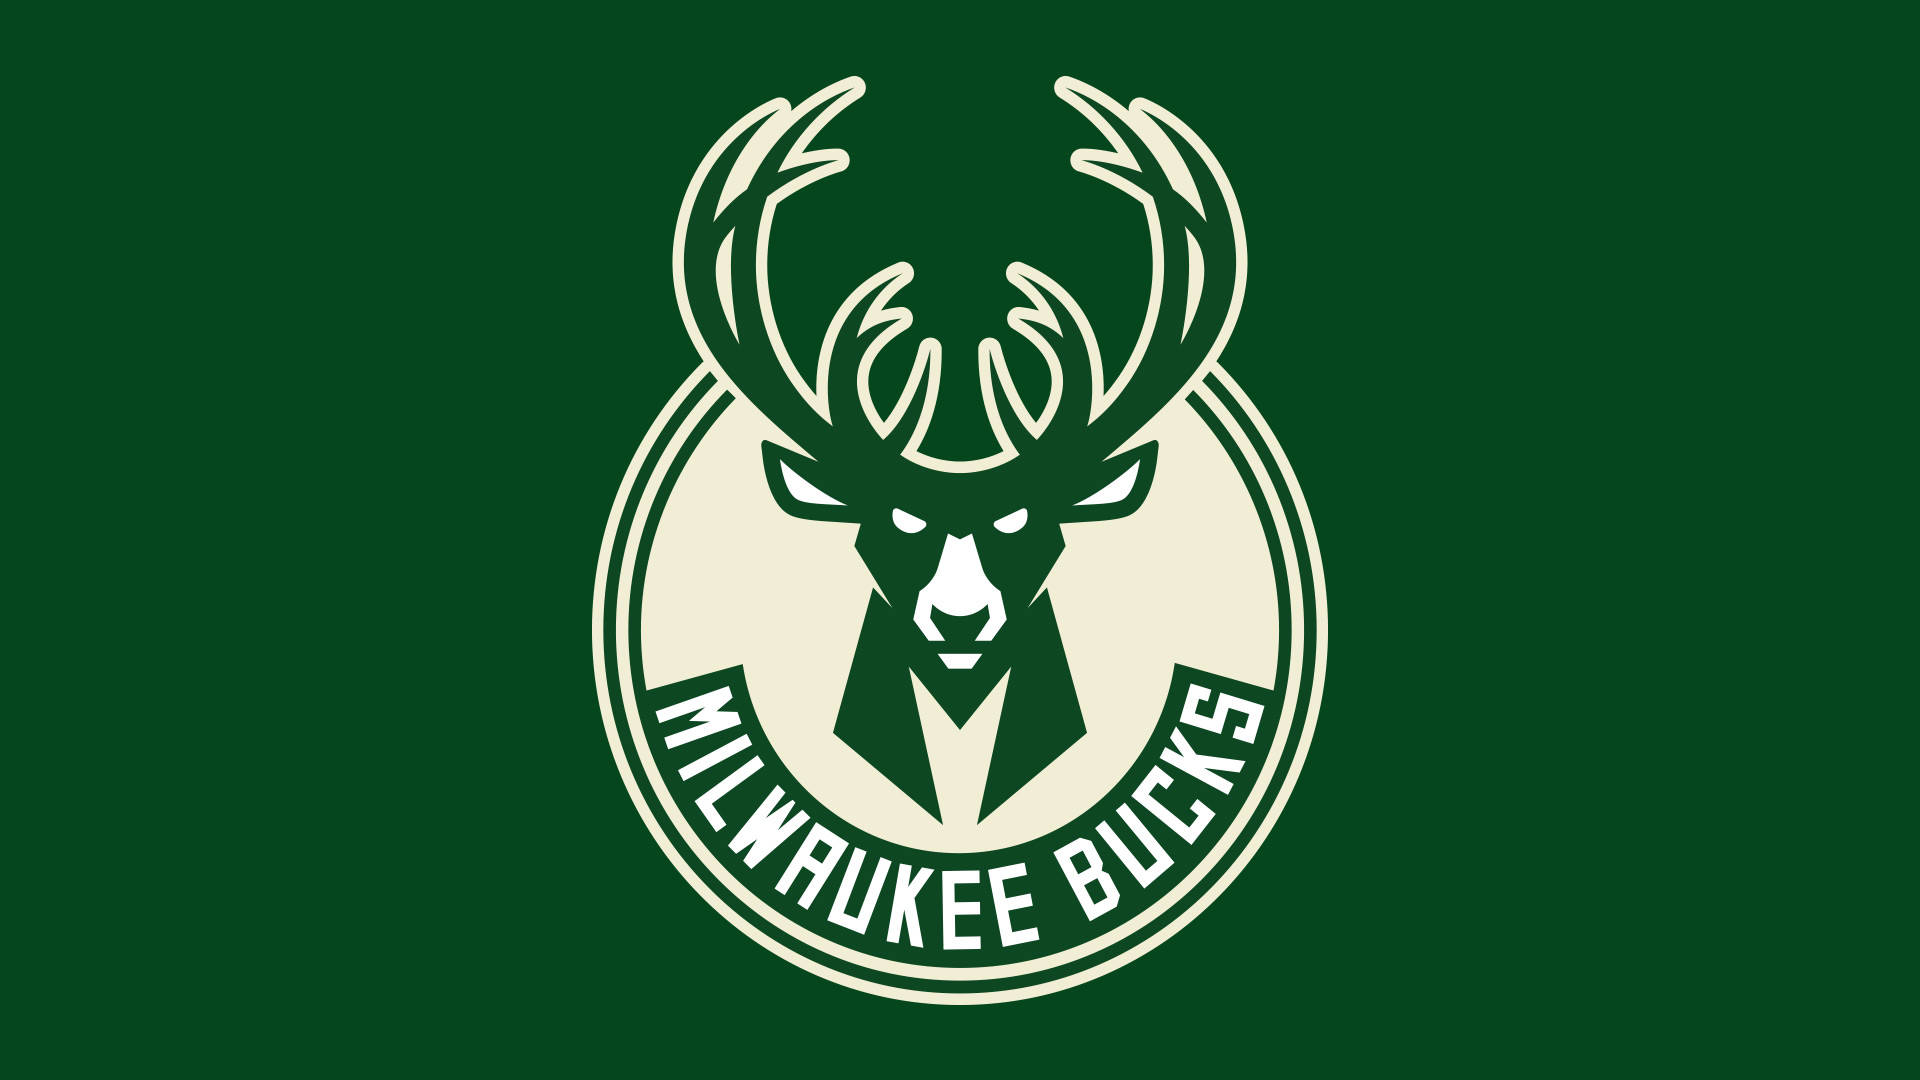 Milwaukee Bucks Basketball Team